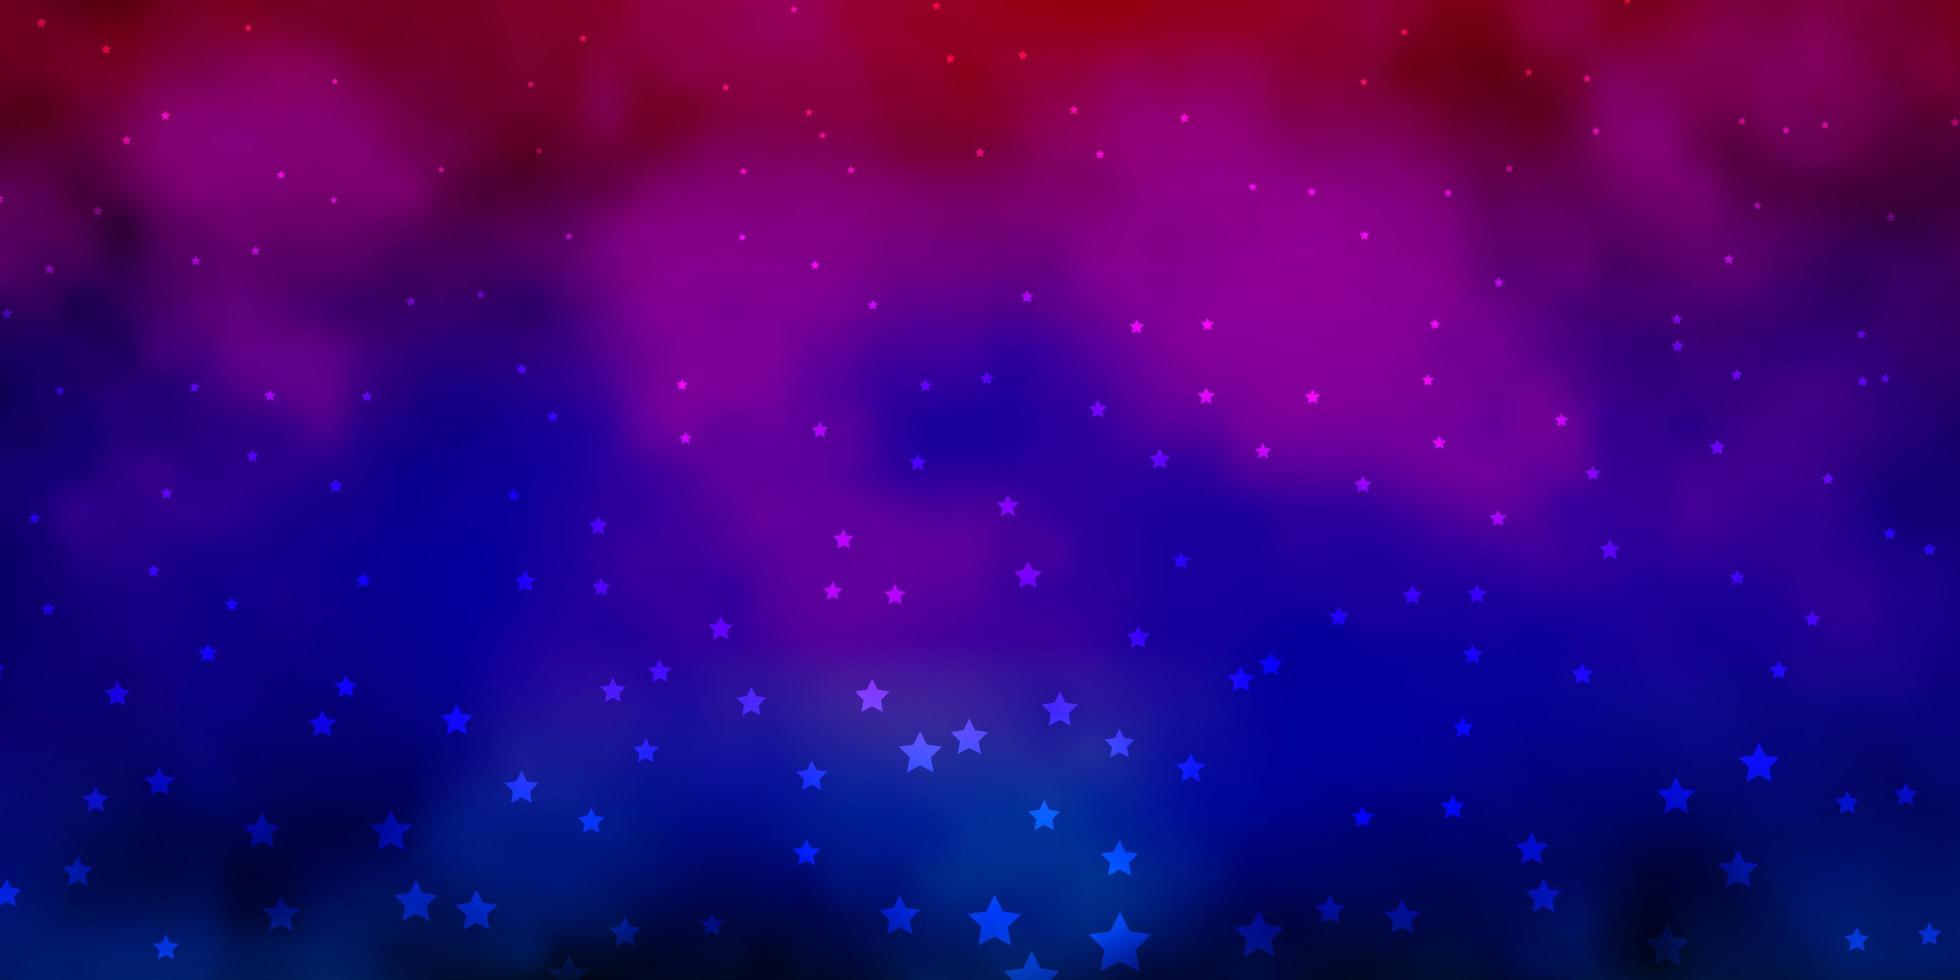 sfondo vettoriale multicolore scuro con stelle piccole e grandi.